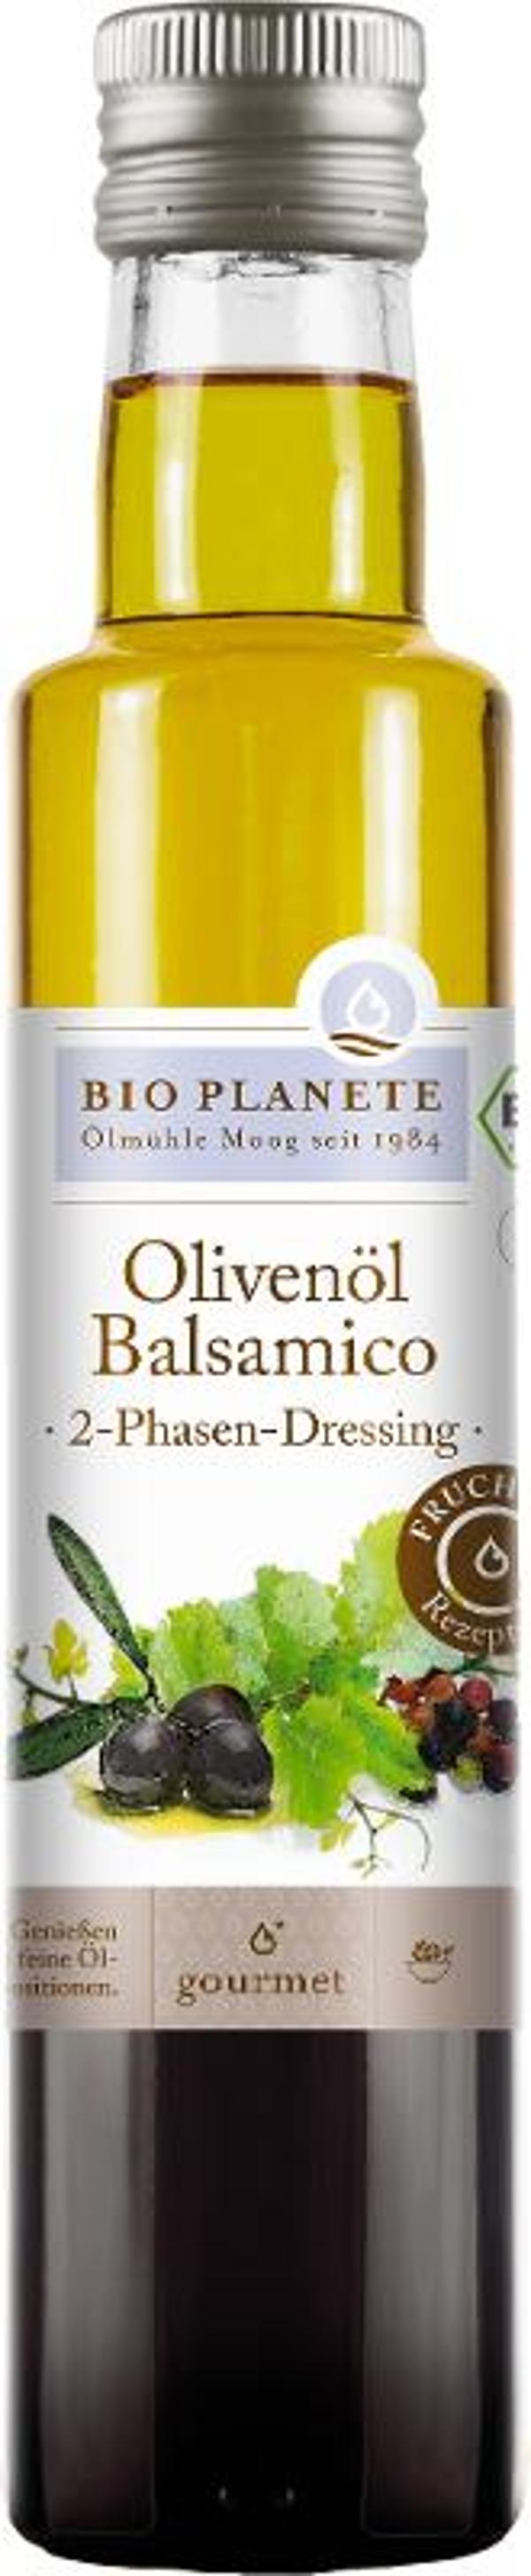 Produktfoto zu Olivenöl und Balsamico-Essig